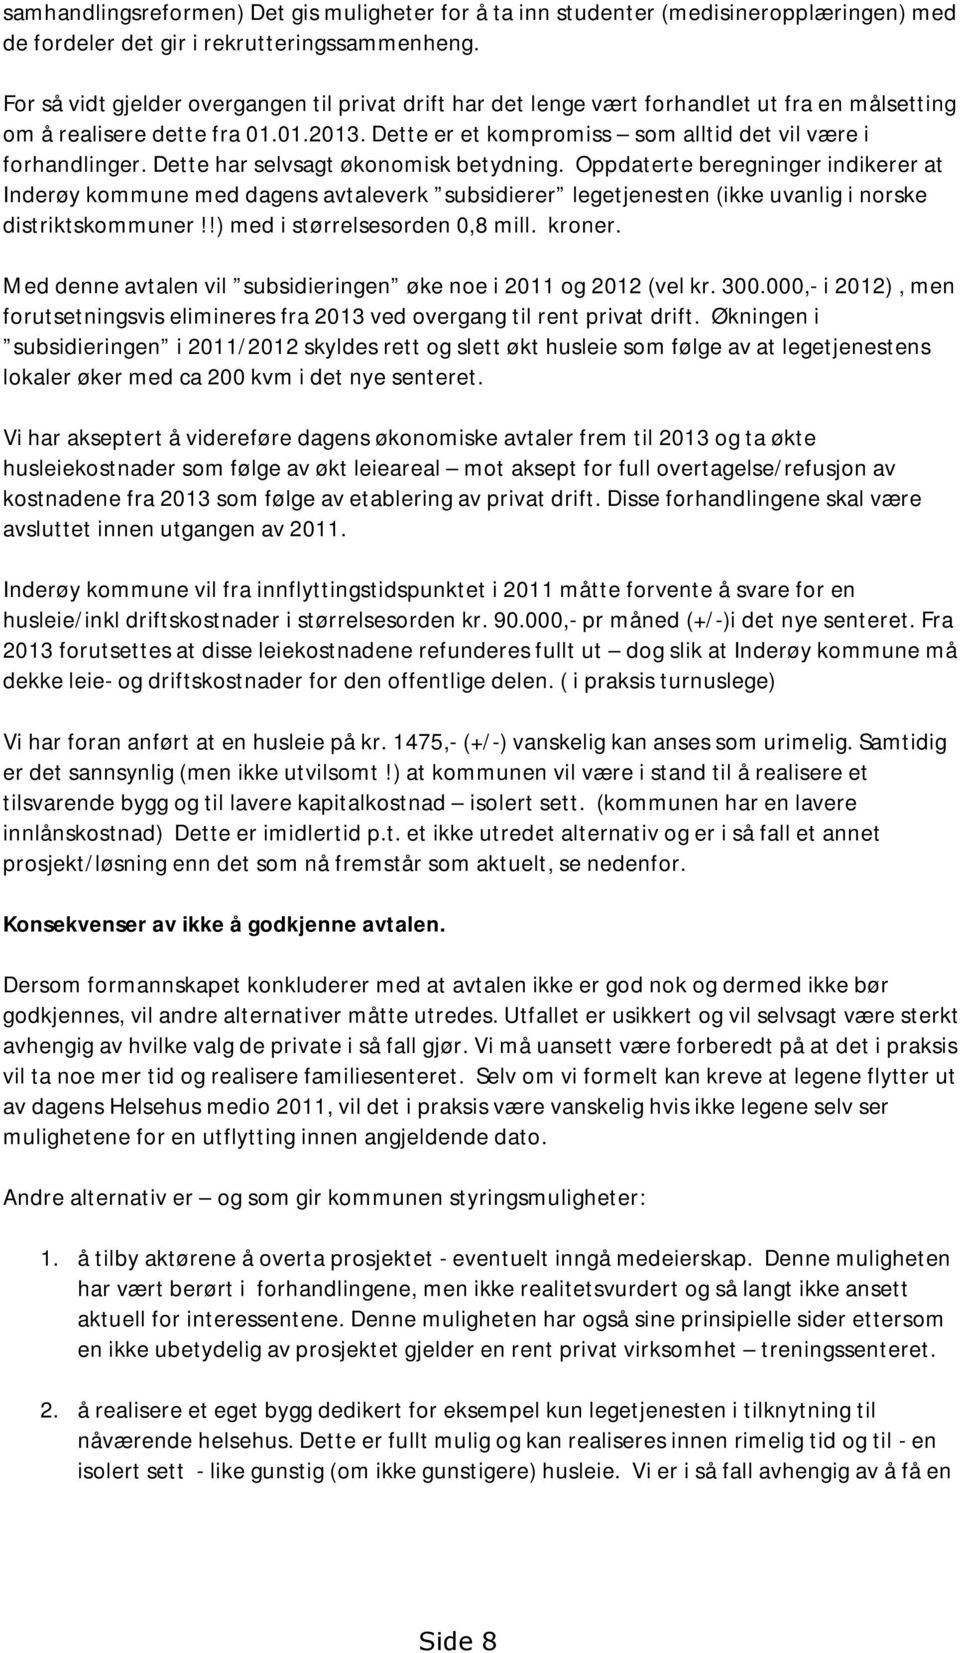 Dette har selvsagt økonomisk betydning. Oppdaterte beregninger indikerer at Inderøy kommune med dagens avtaleverk subsidierer legetjenesten (ikke uvanlig i norske distriktskommuner!